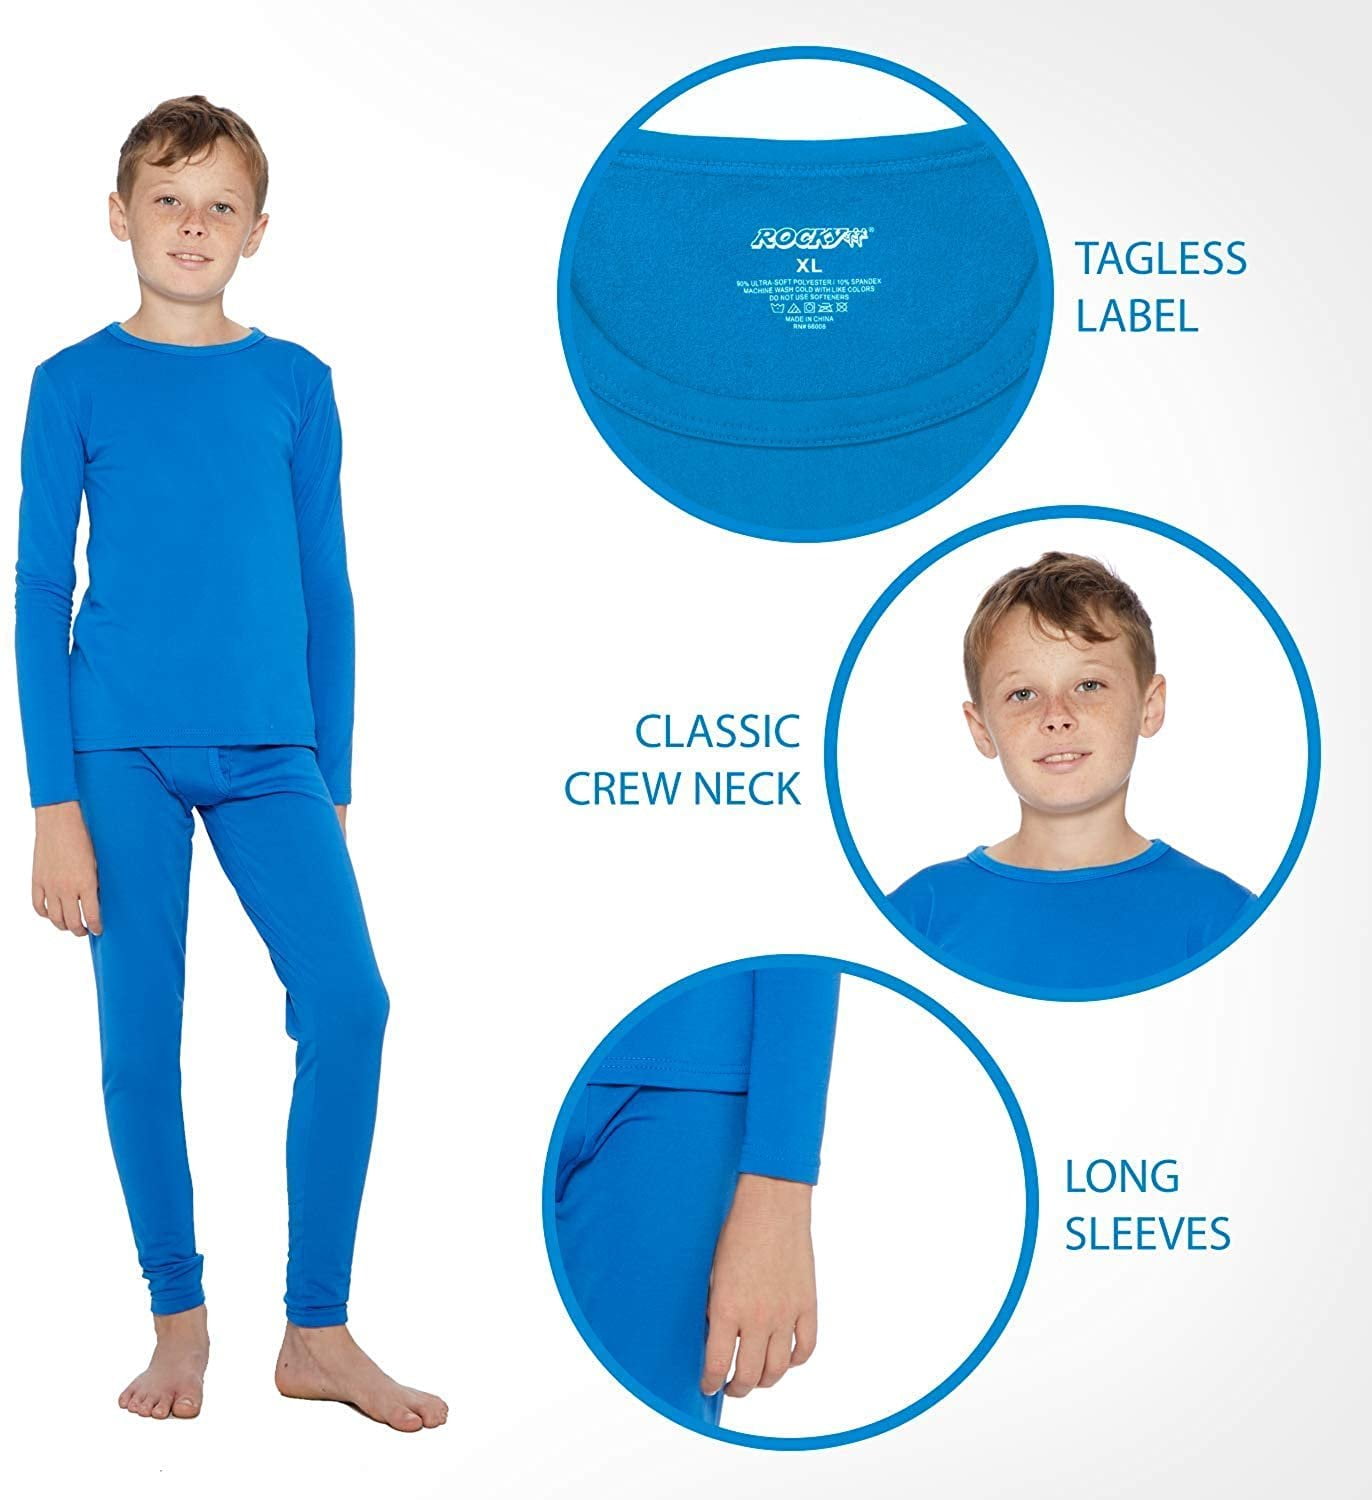 Rocky Camiseta térmica de capa base para niña (Long John Underwear